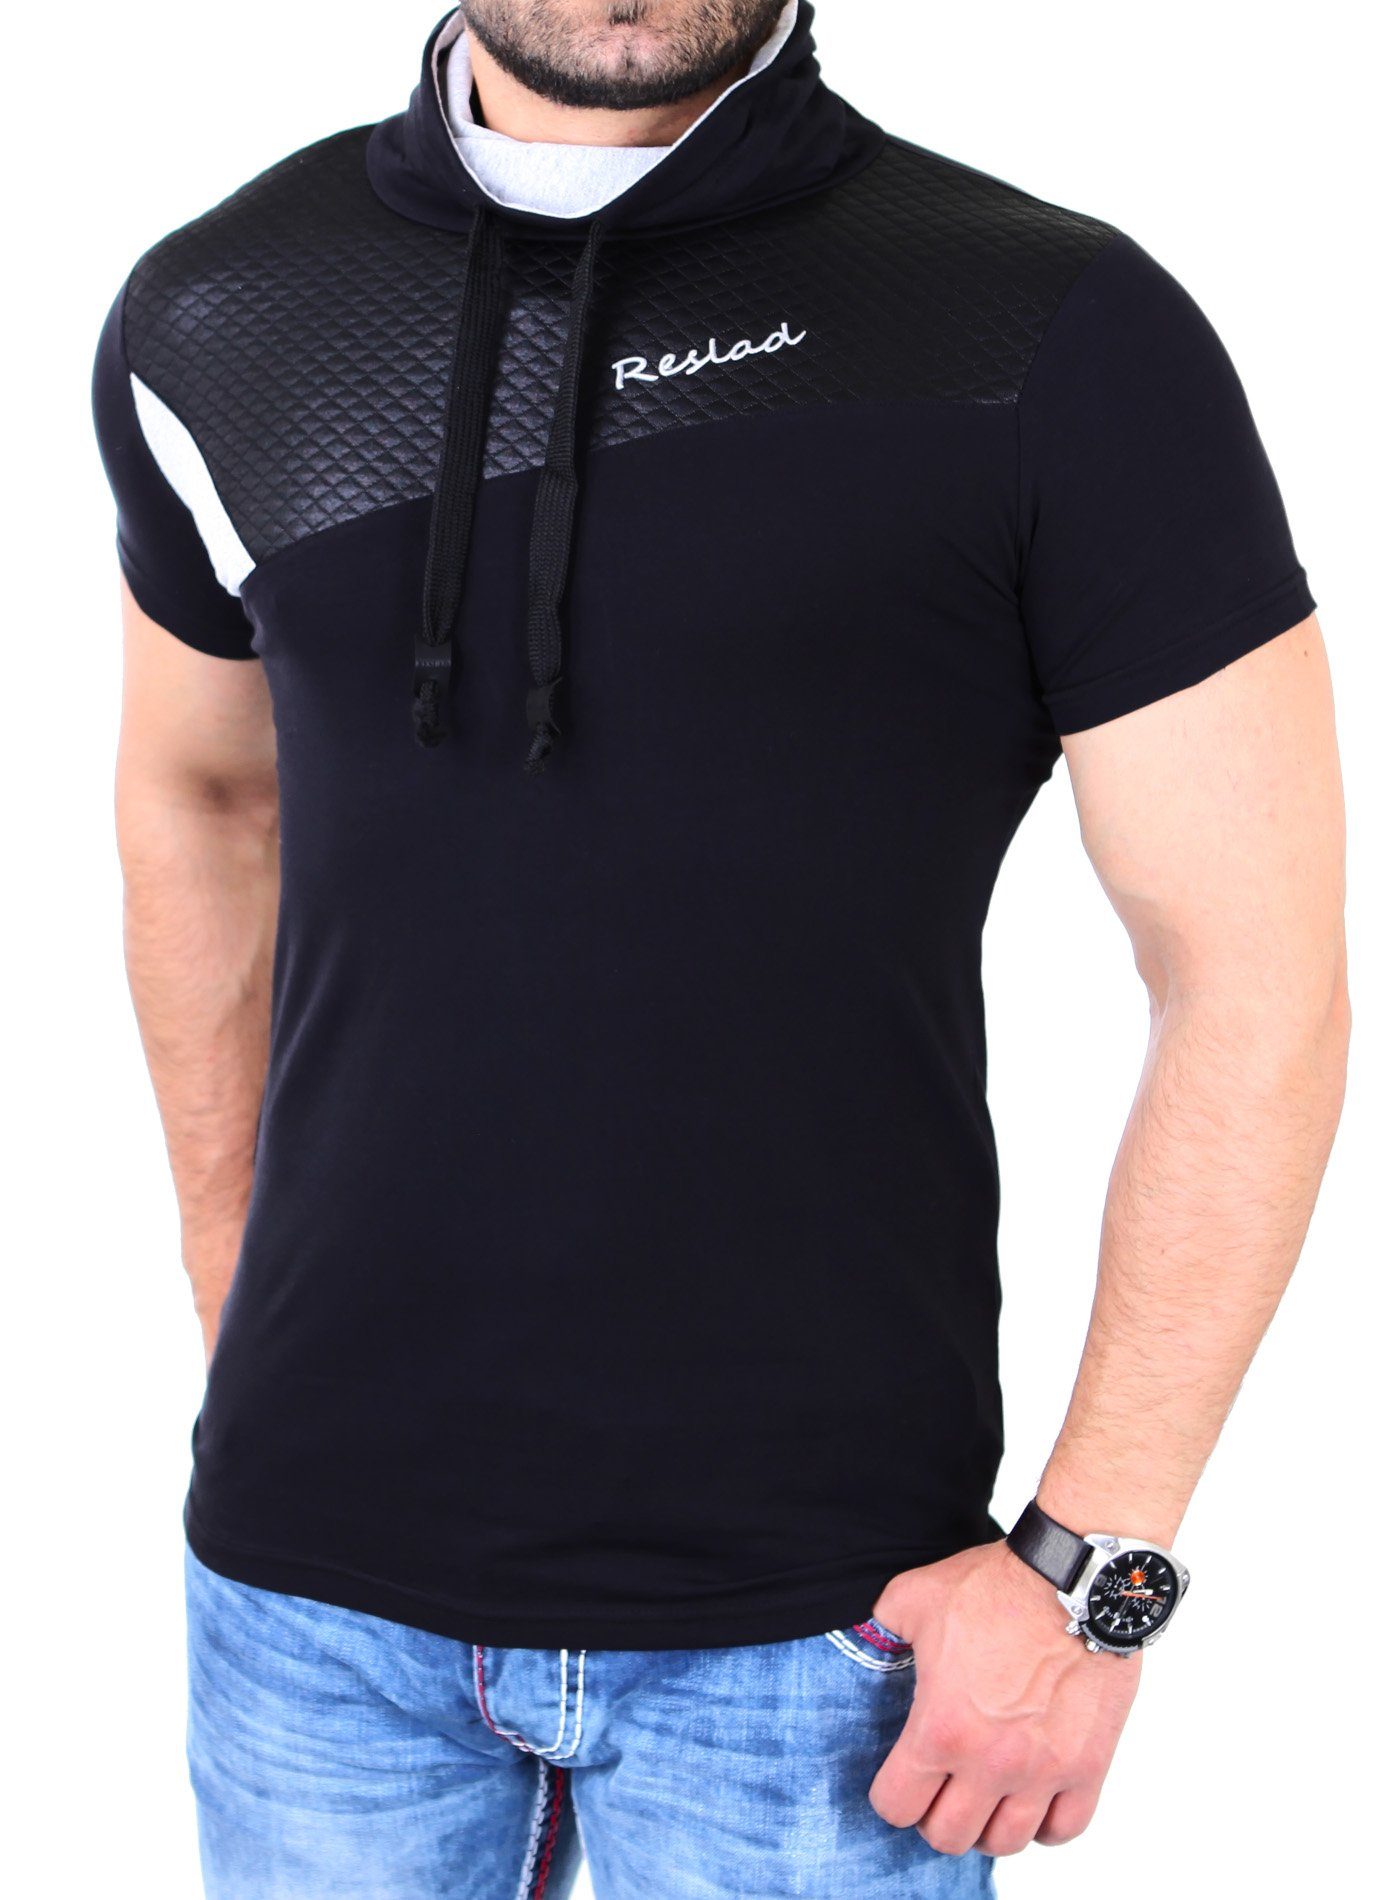 mit Tunnelzug Stich Herren Reslad T-Shirt Reslad Shirt schwarz Schalkragen RS-05 Diamond Schalkragen (1-tlg) T-Shirt